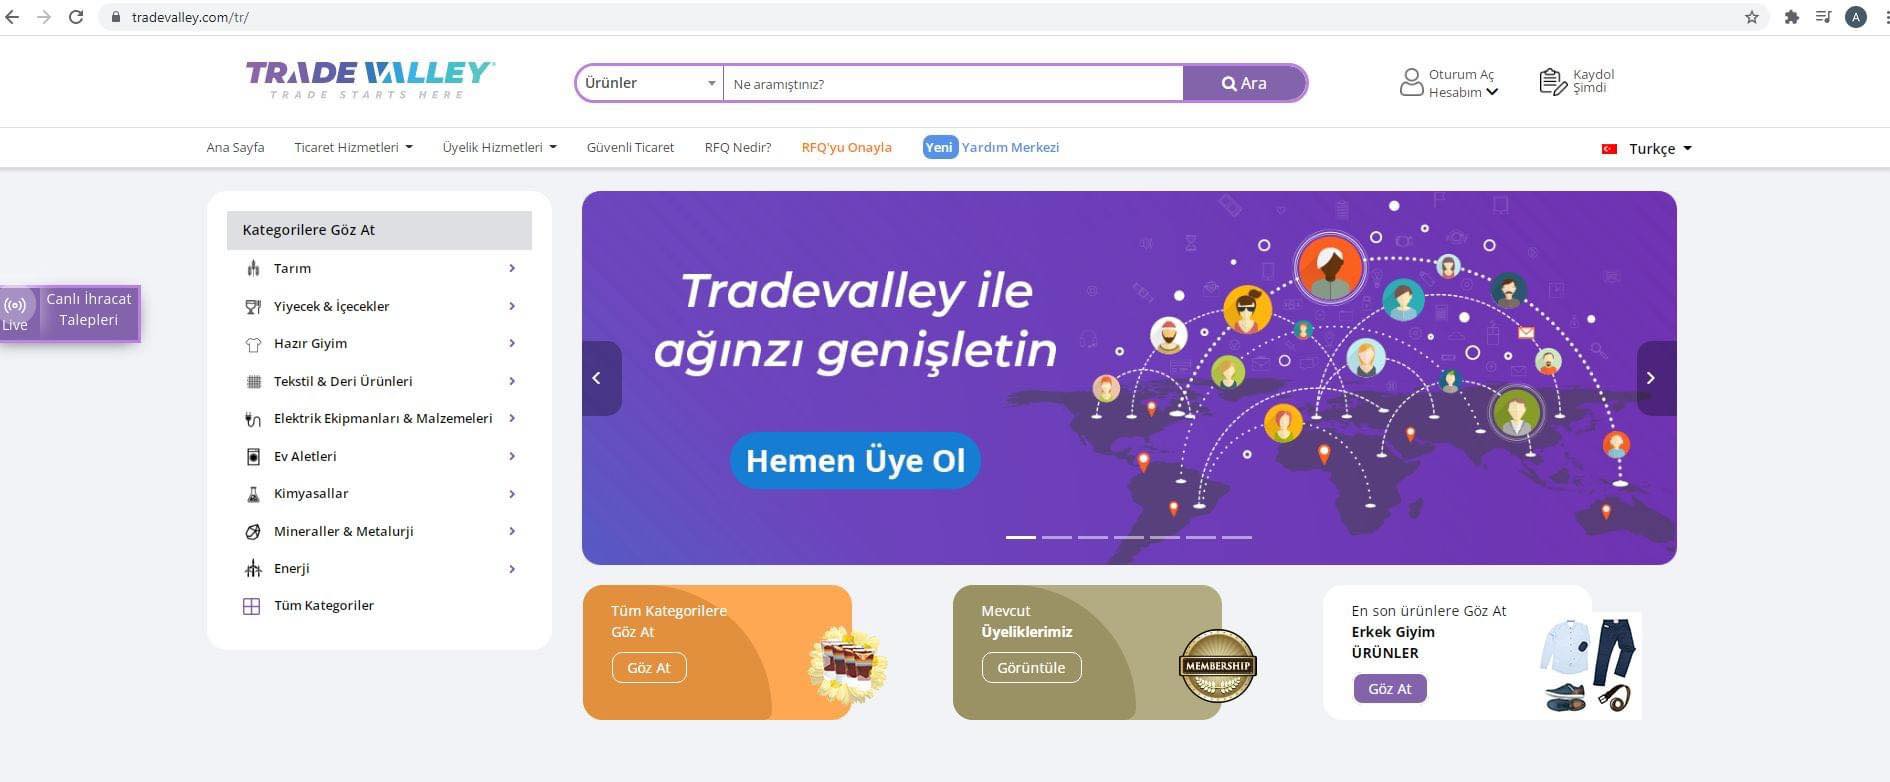 Azexport.az portalı ilə Türkiyənin Tradevalley portalı arasında anlaşma memorandumu imzalanıb